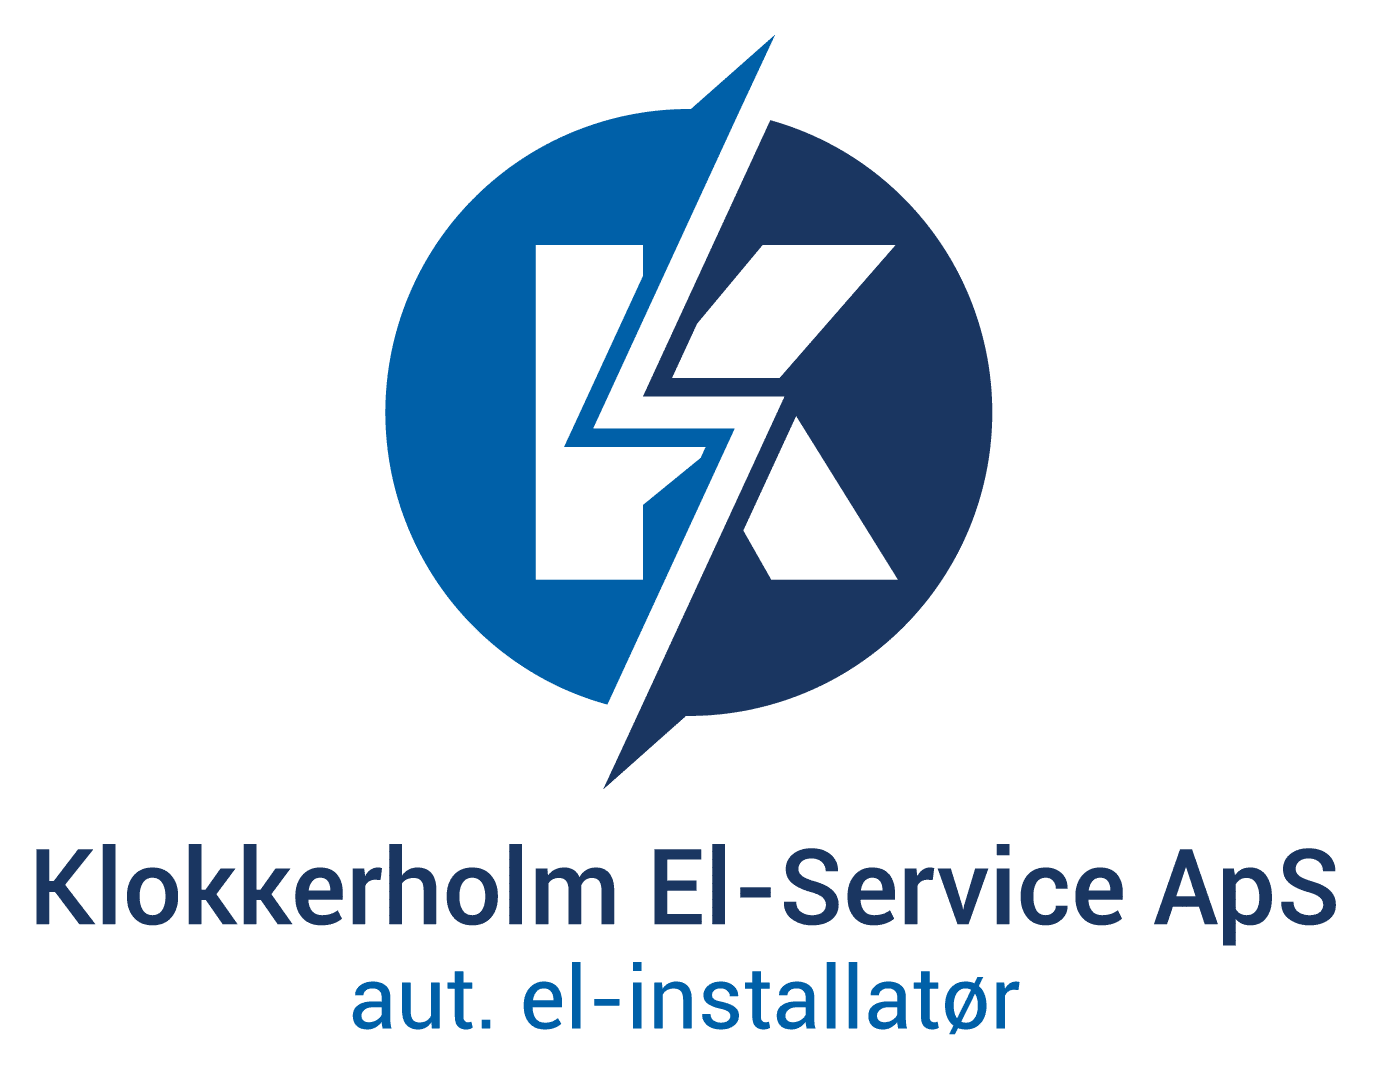 Klokkerholm El-Service ApS